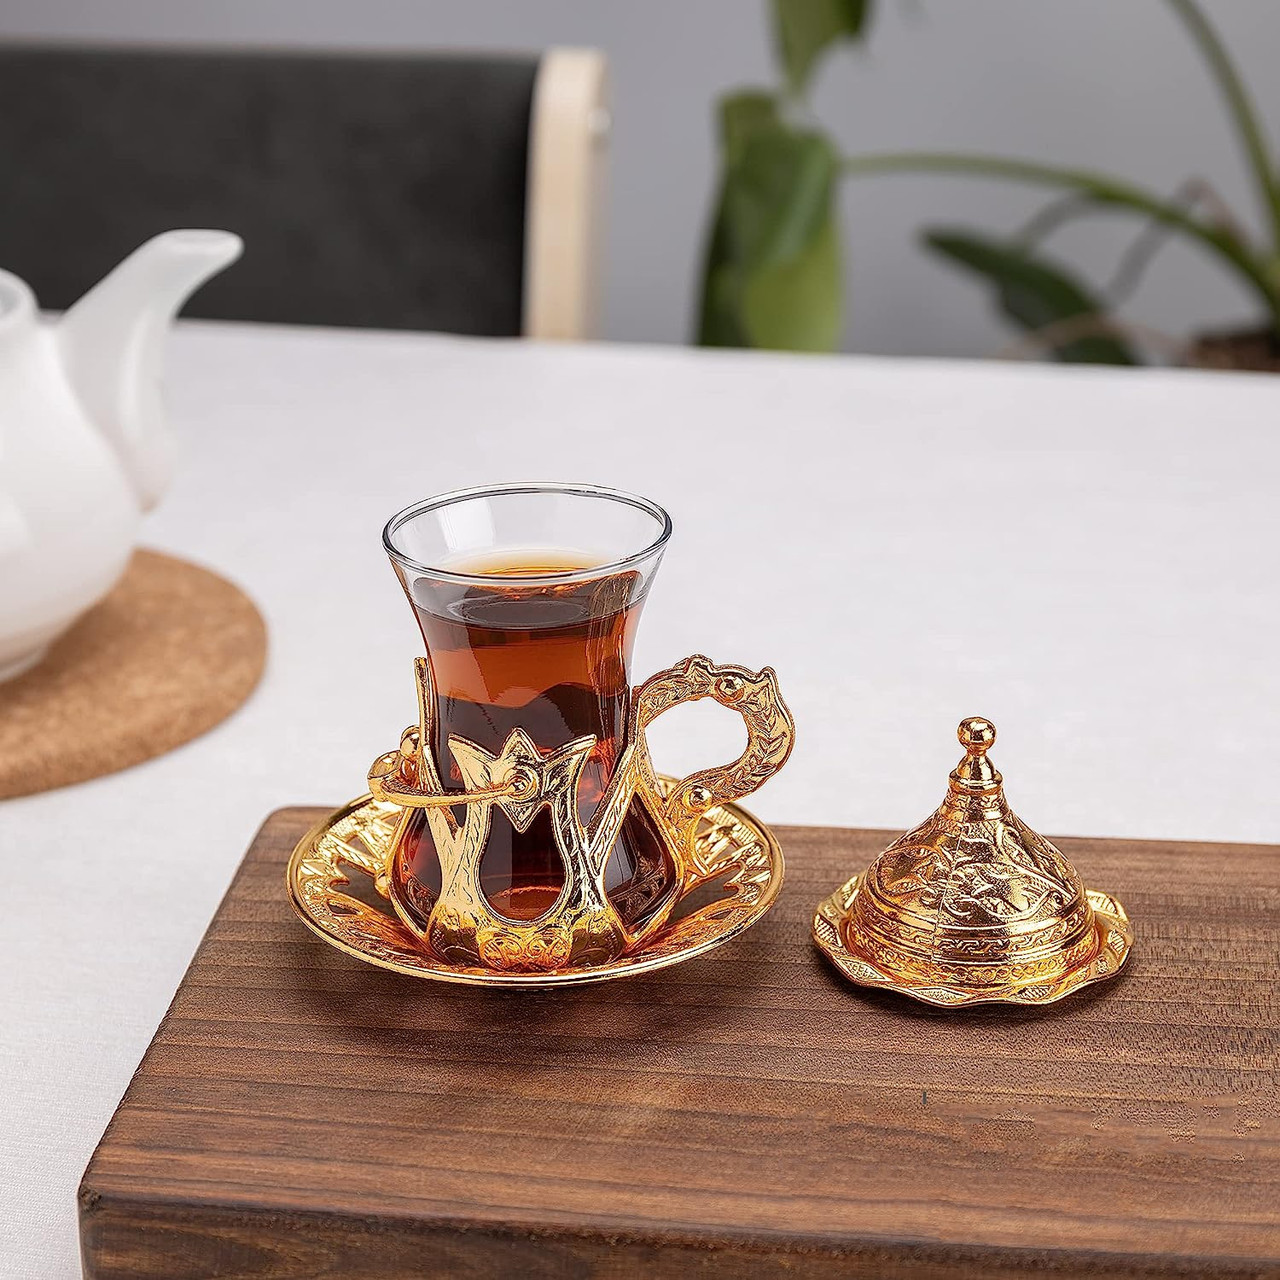 Турецька склянка Армуди з лукумницею для чаю і кави. Золото, фото 1